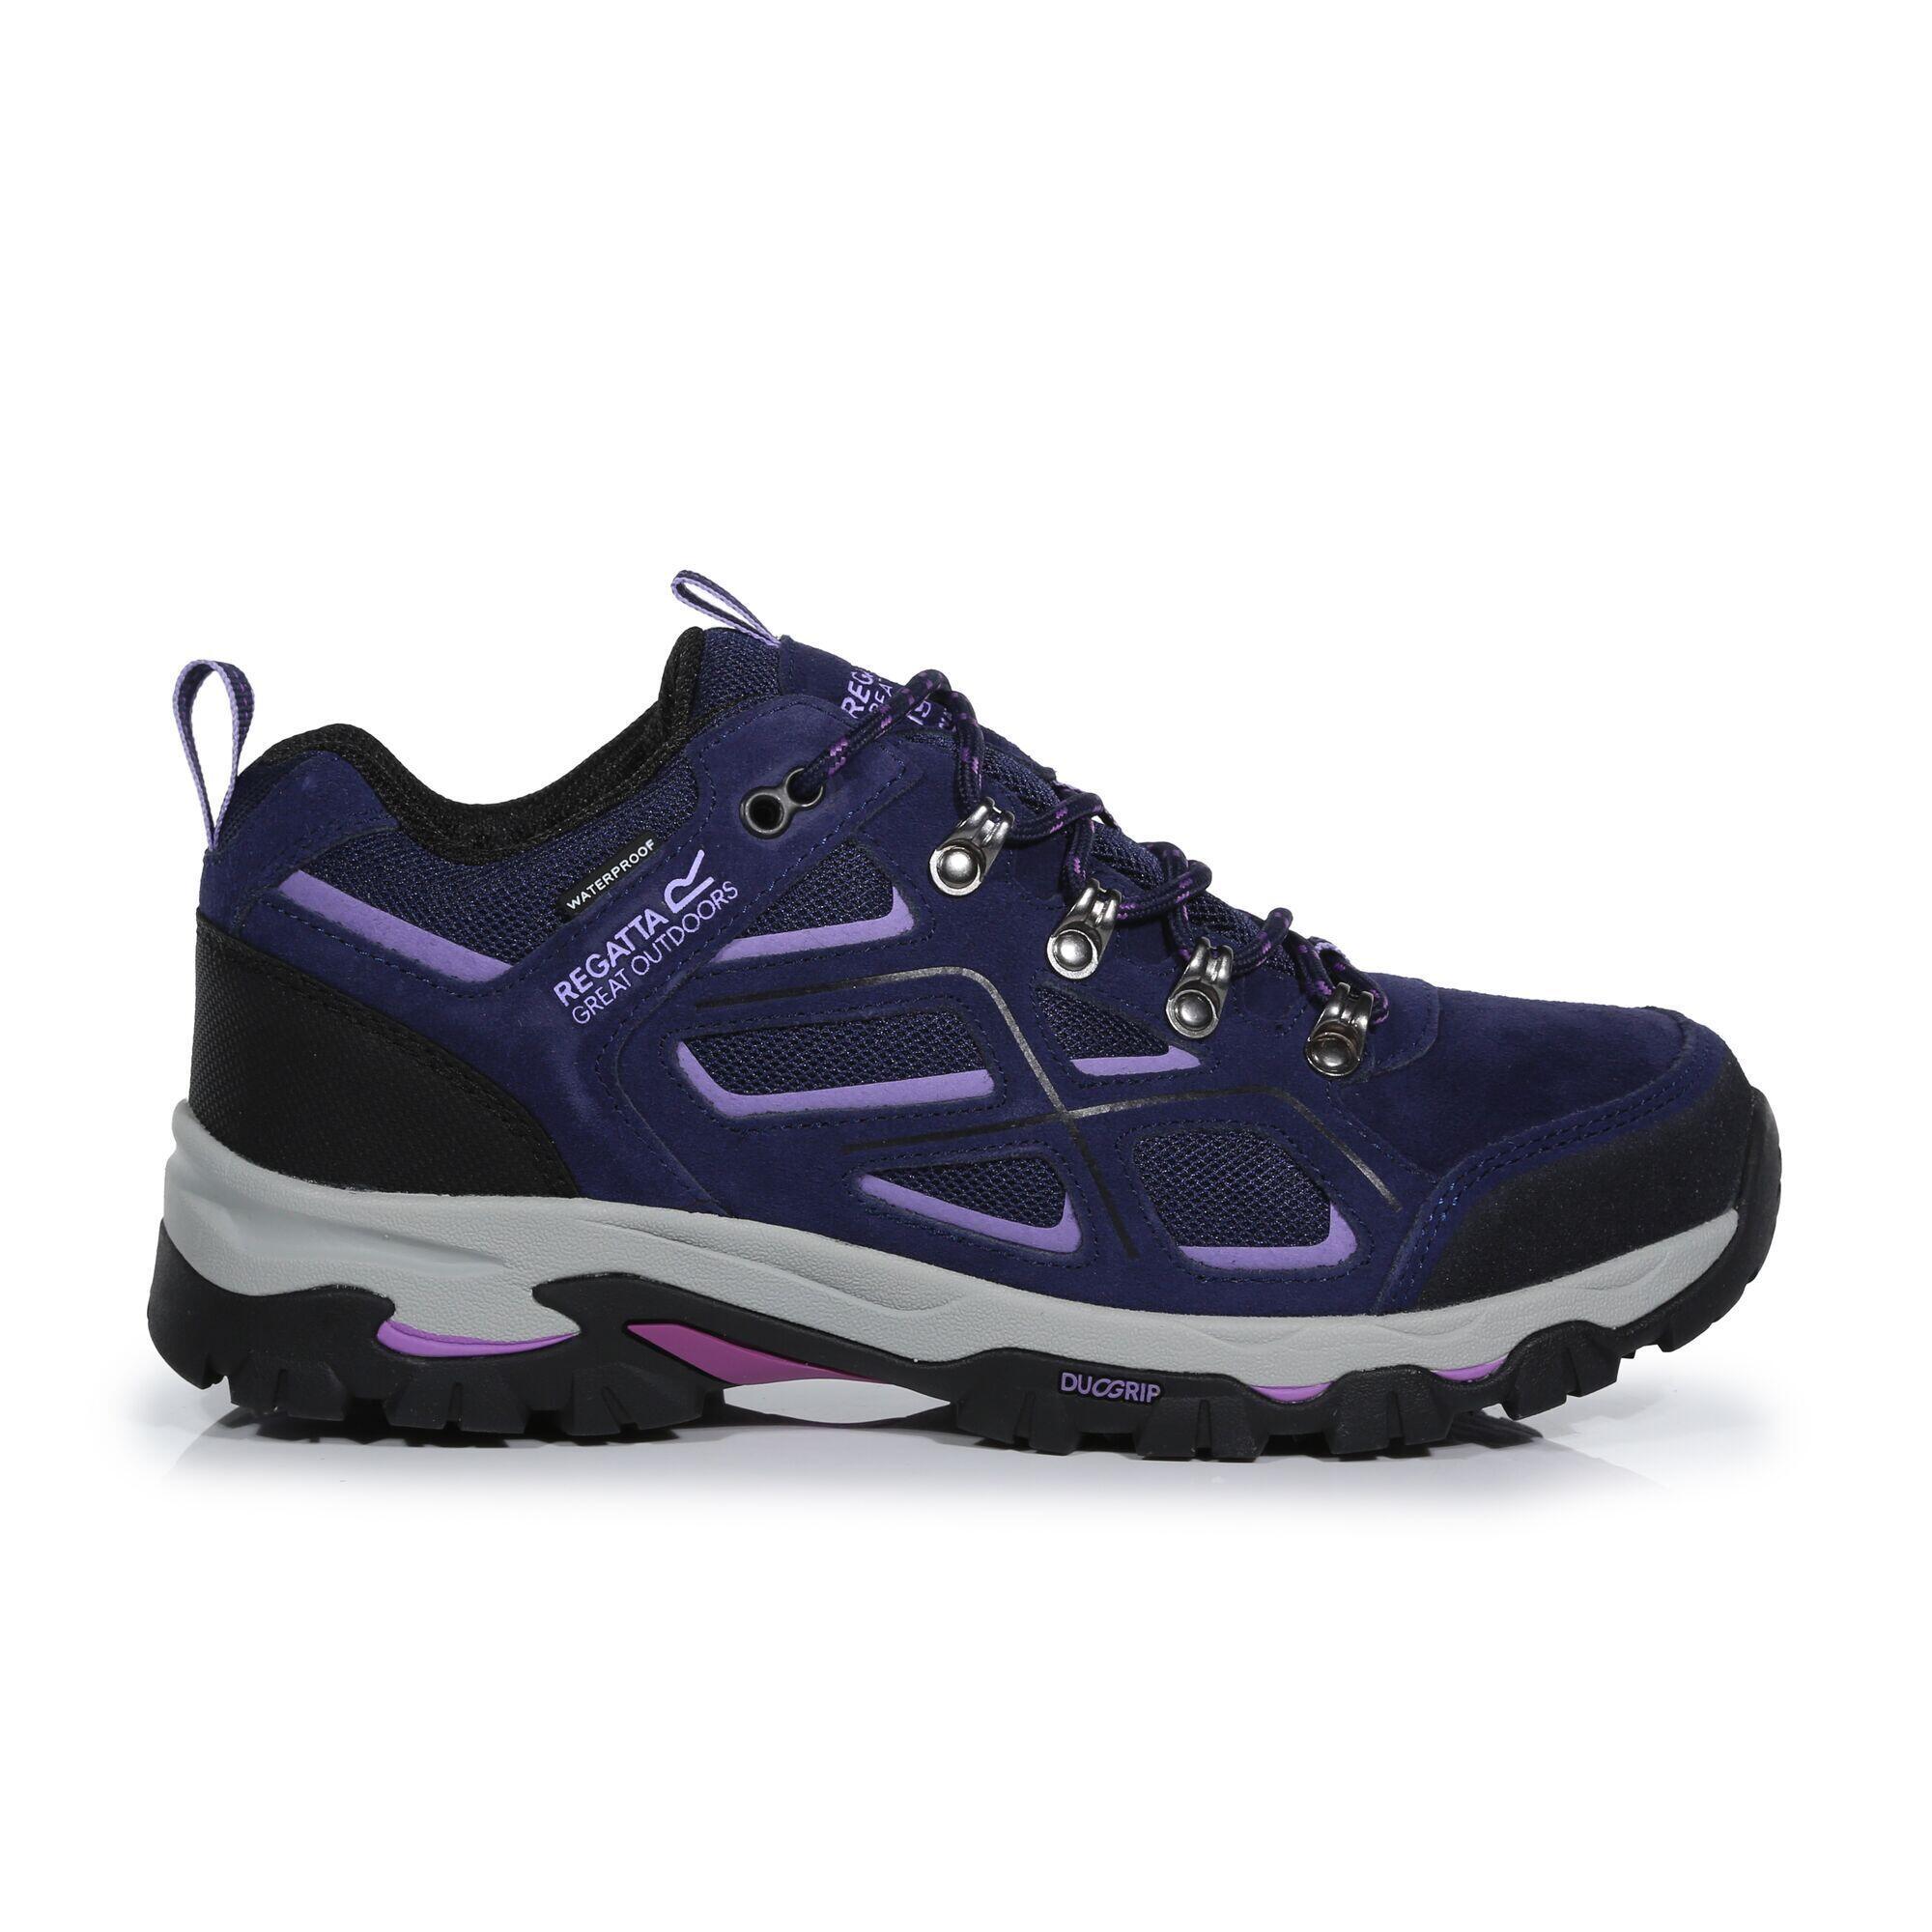 Womens/Ladies Tebay Waterproof Suede Walking Shoes (Midnight/Lilac Bloom) 4/5